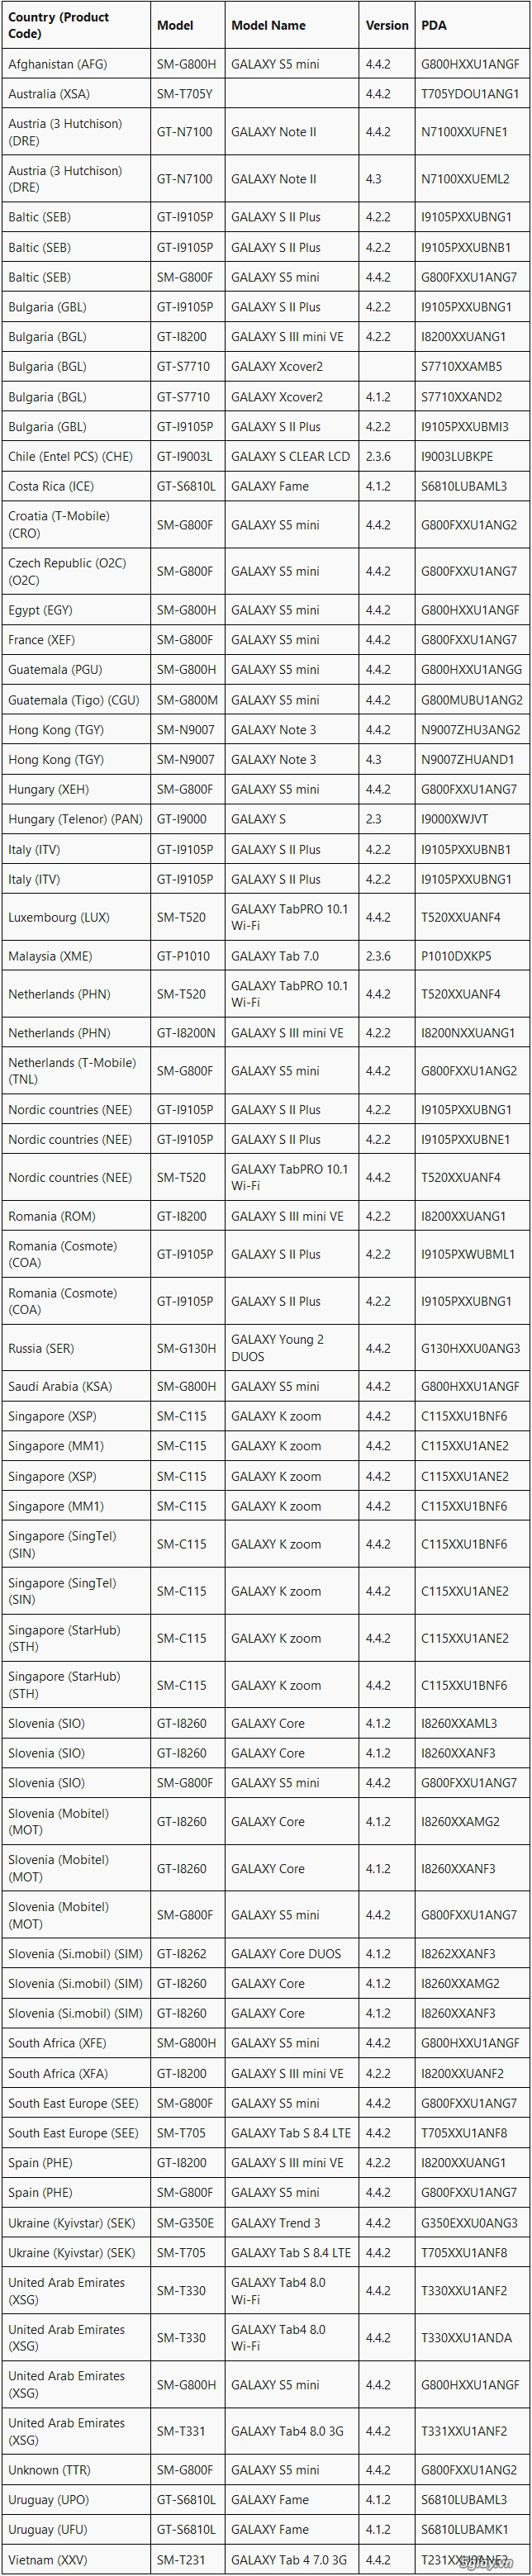 Firmware update galaxy note ii galaxy s5 mini galaxy k zoom - 2